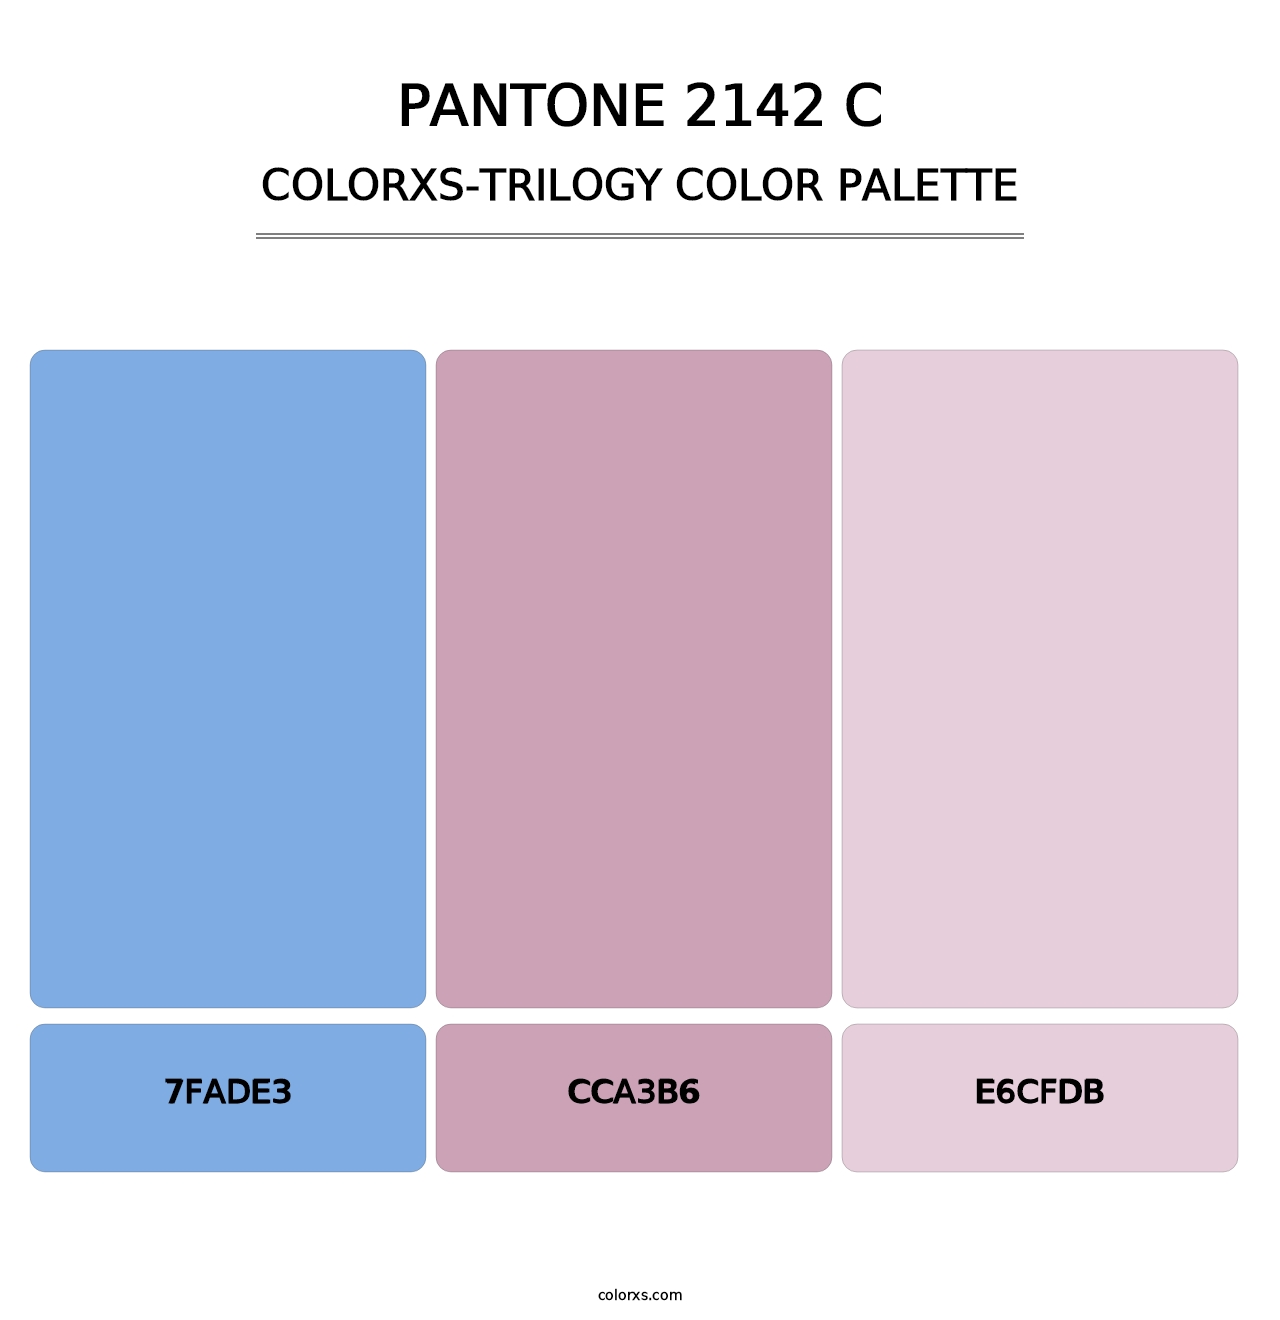 PANTONE 2142 C - Colorxs Trilogy Palette